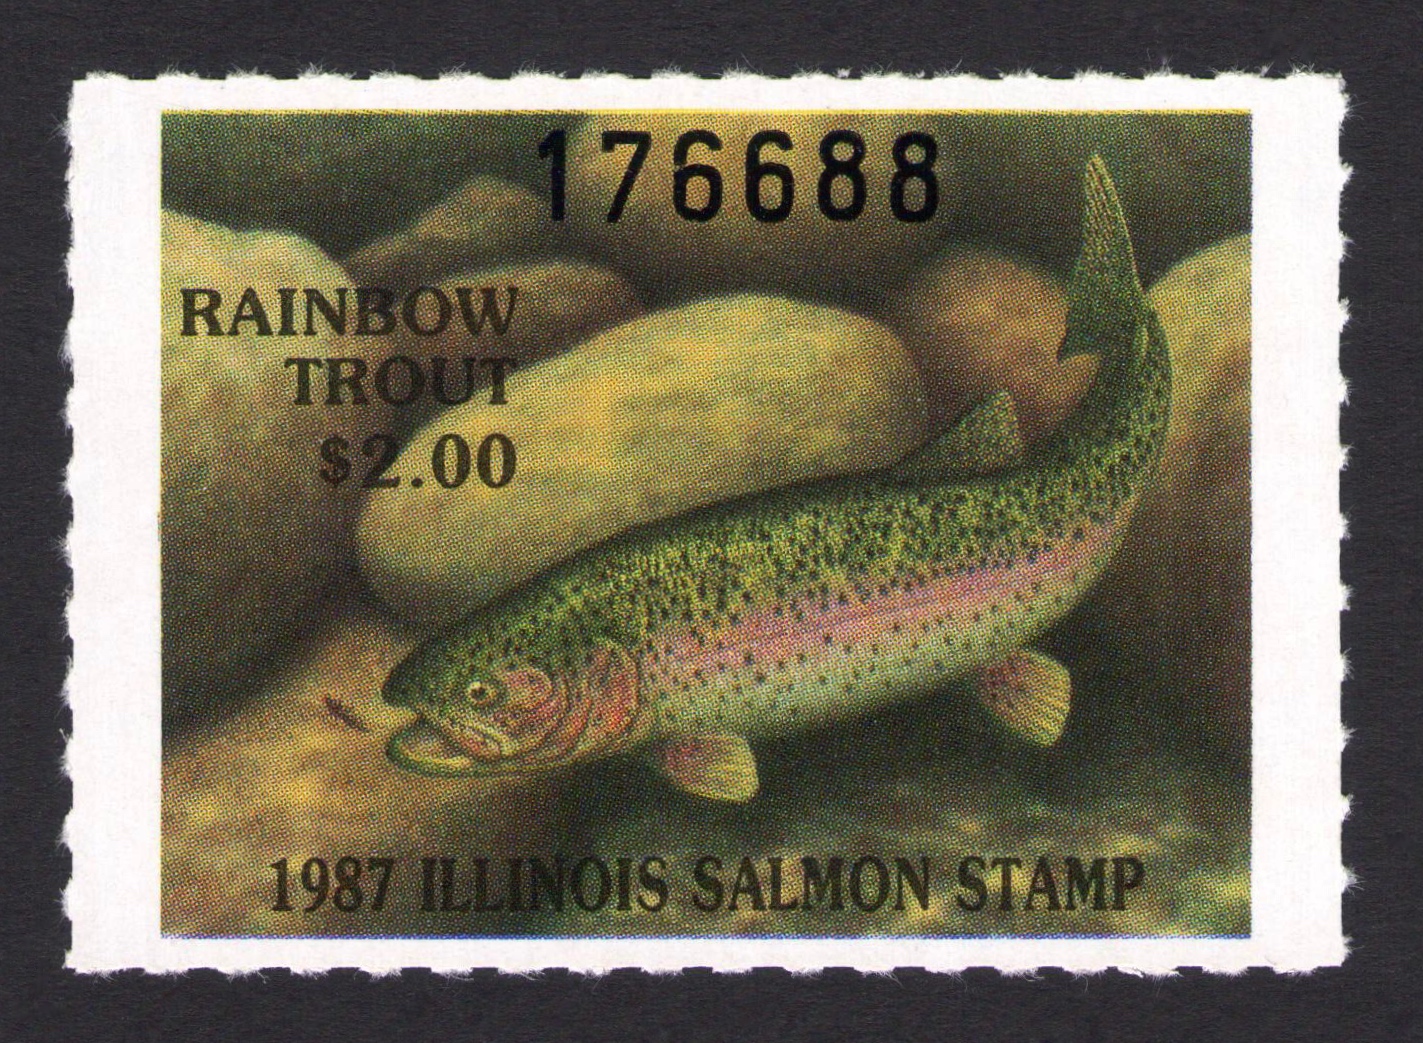 1987 Illinois Salmon